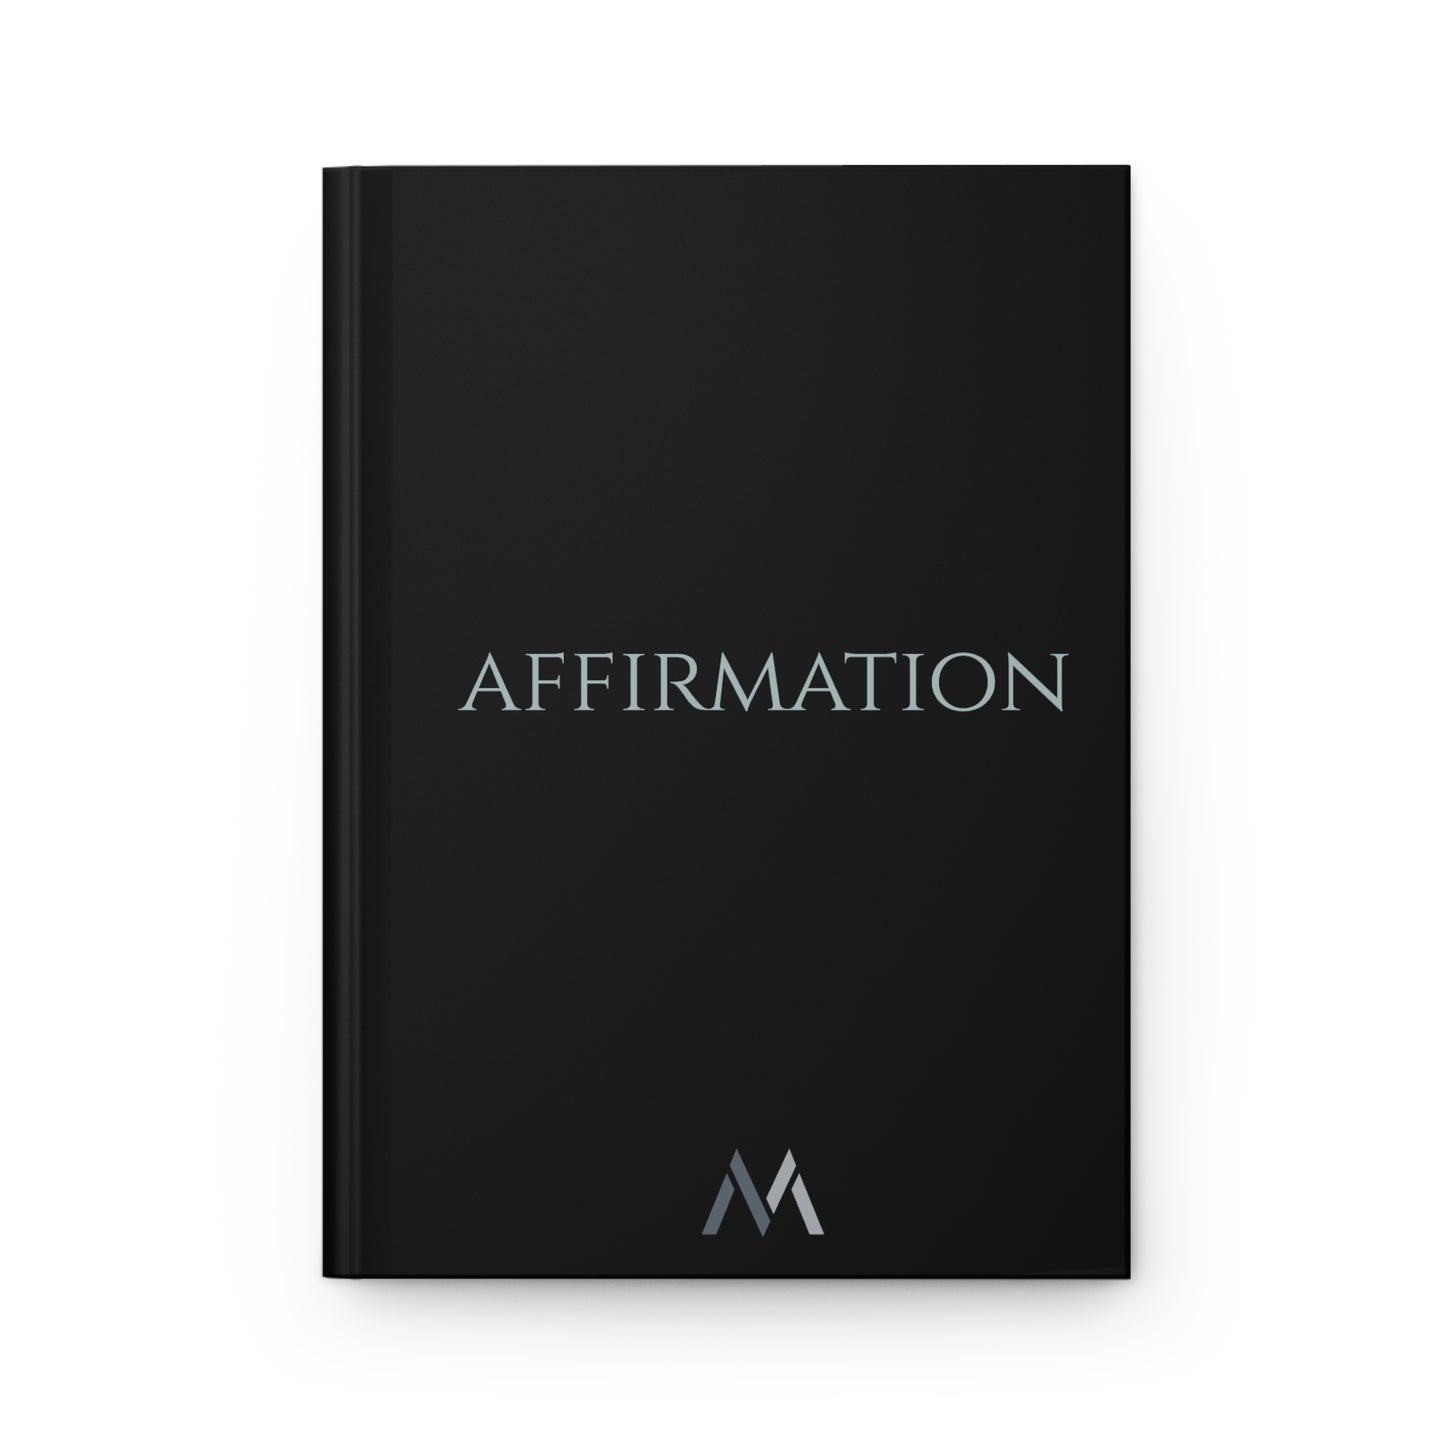 "AFFIRMATION" Hard Cover Matte Black Journal